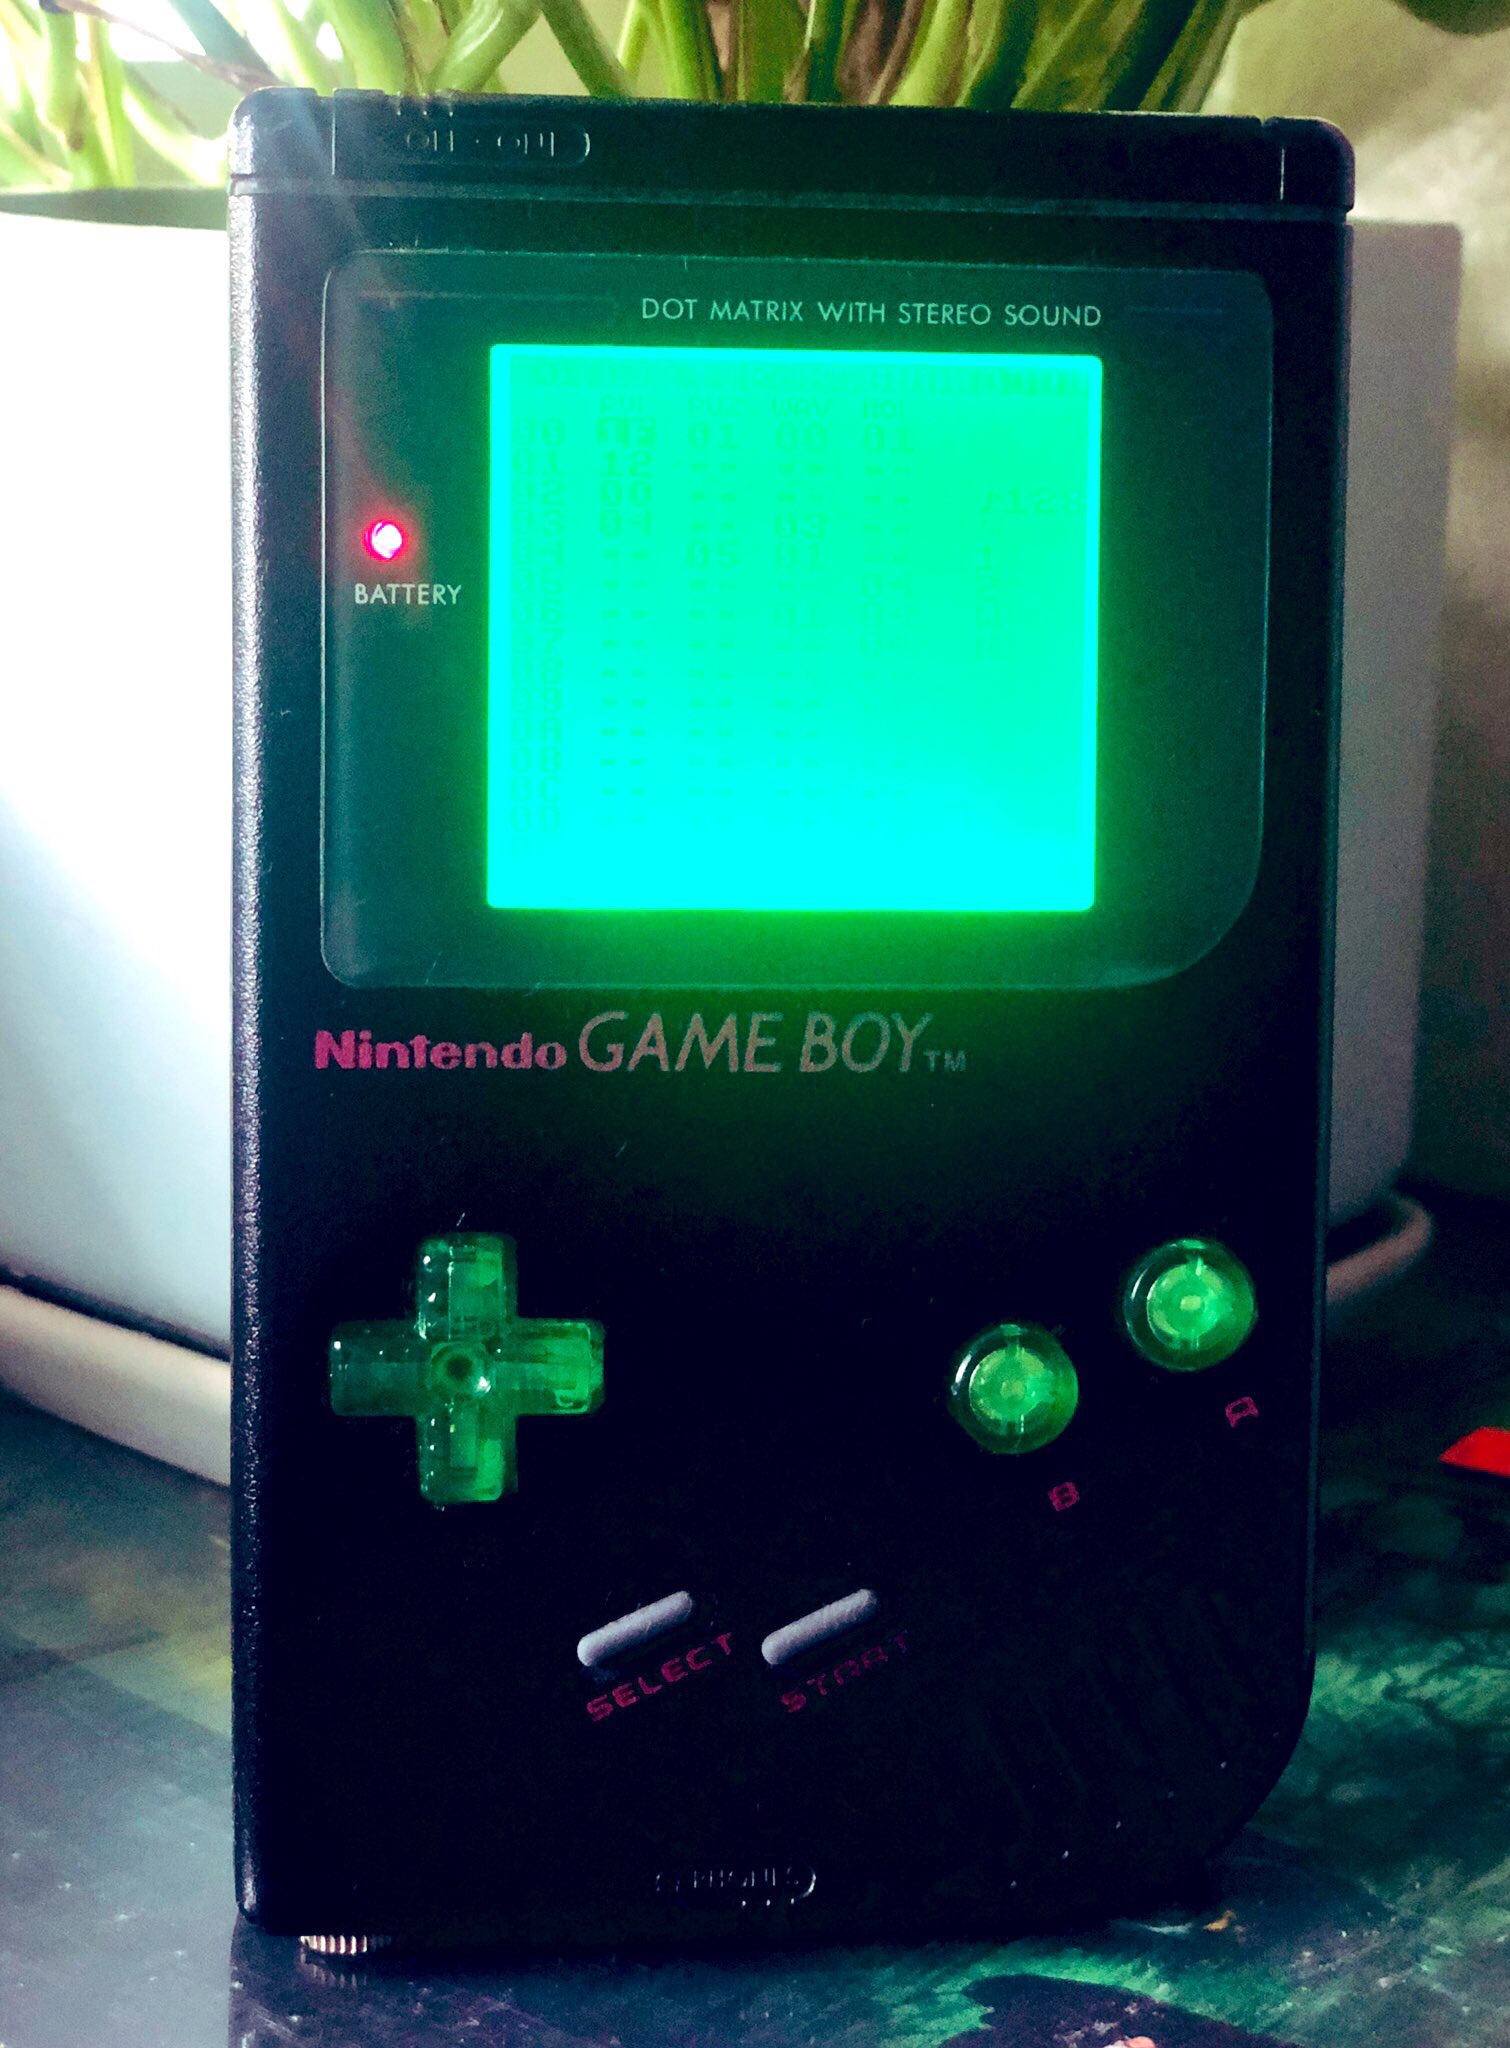 game boy - Dot Matrix With Sterio Sono Nintendo Game Boy